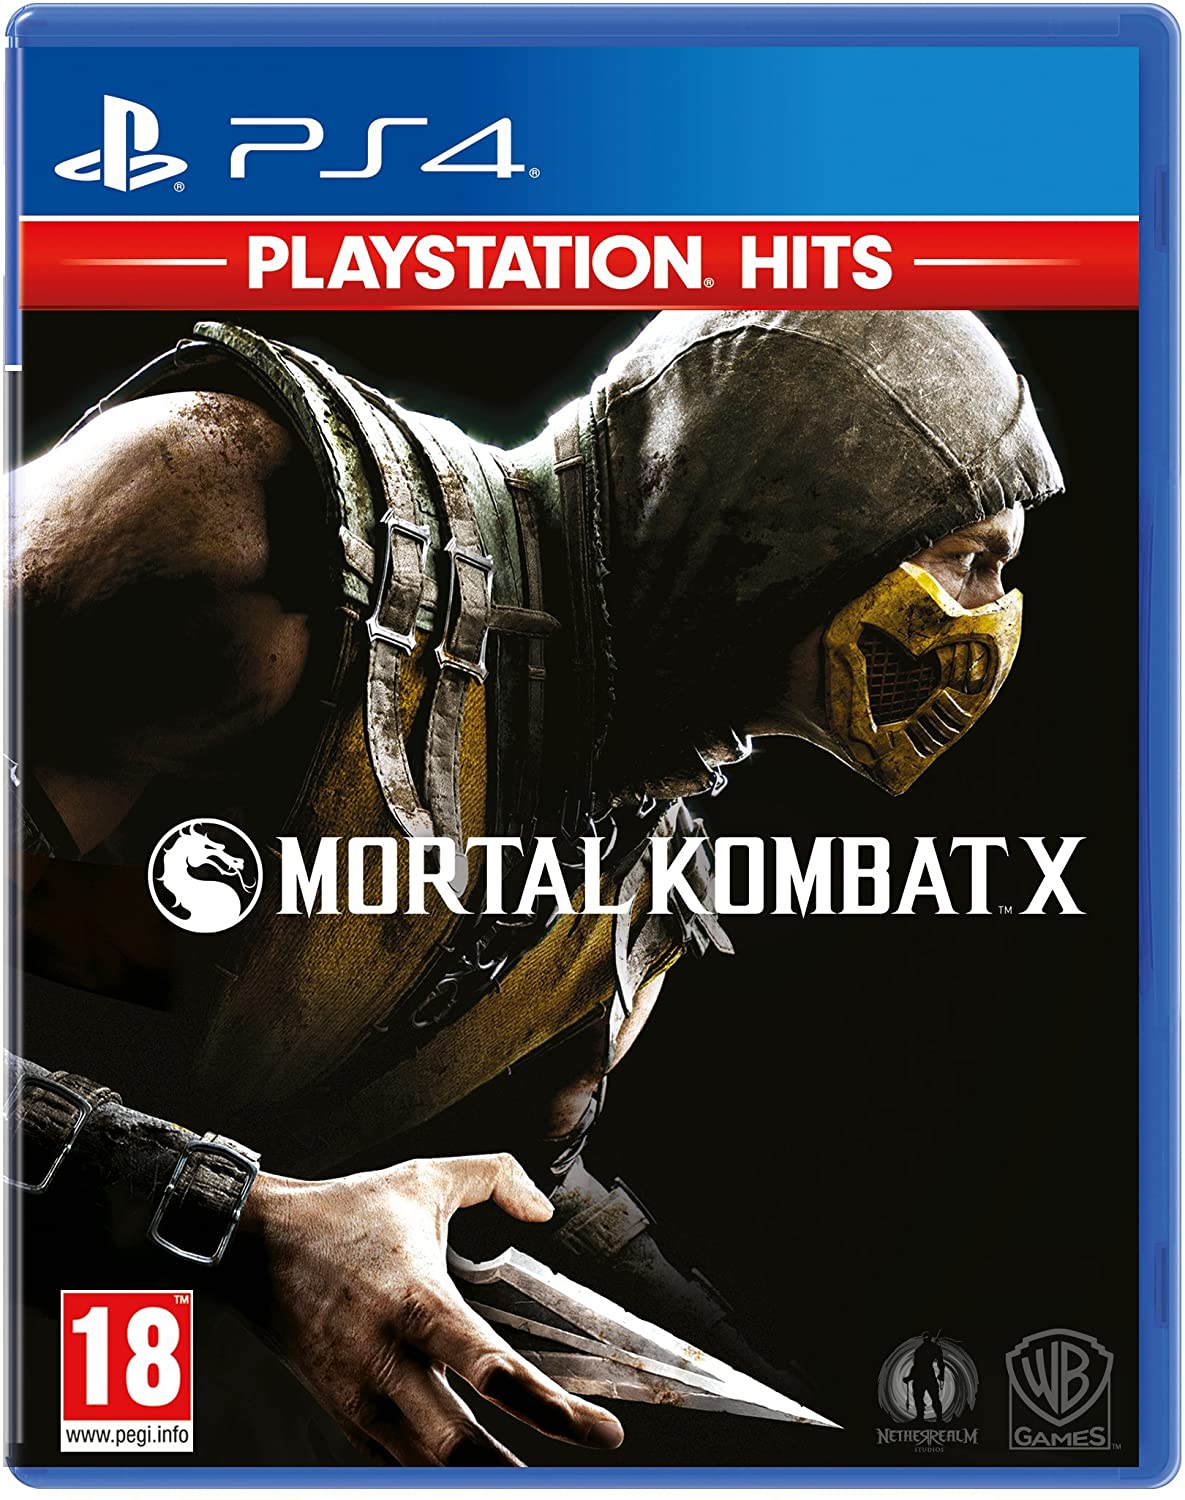 Mortal Kombat X Video Game - PlayStation Hits (PS4)